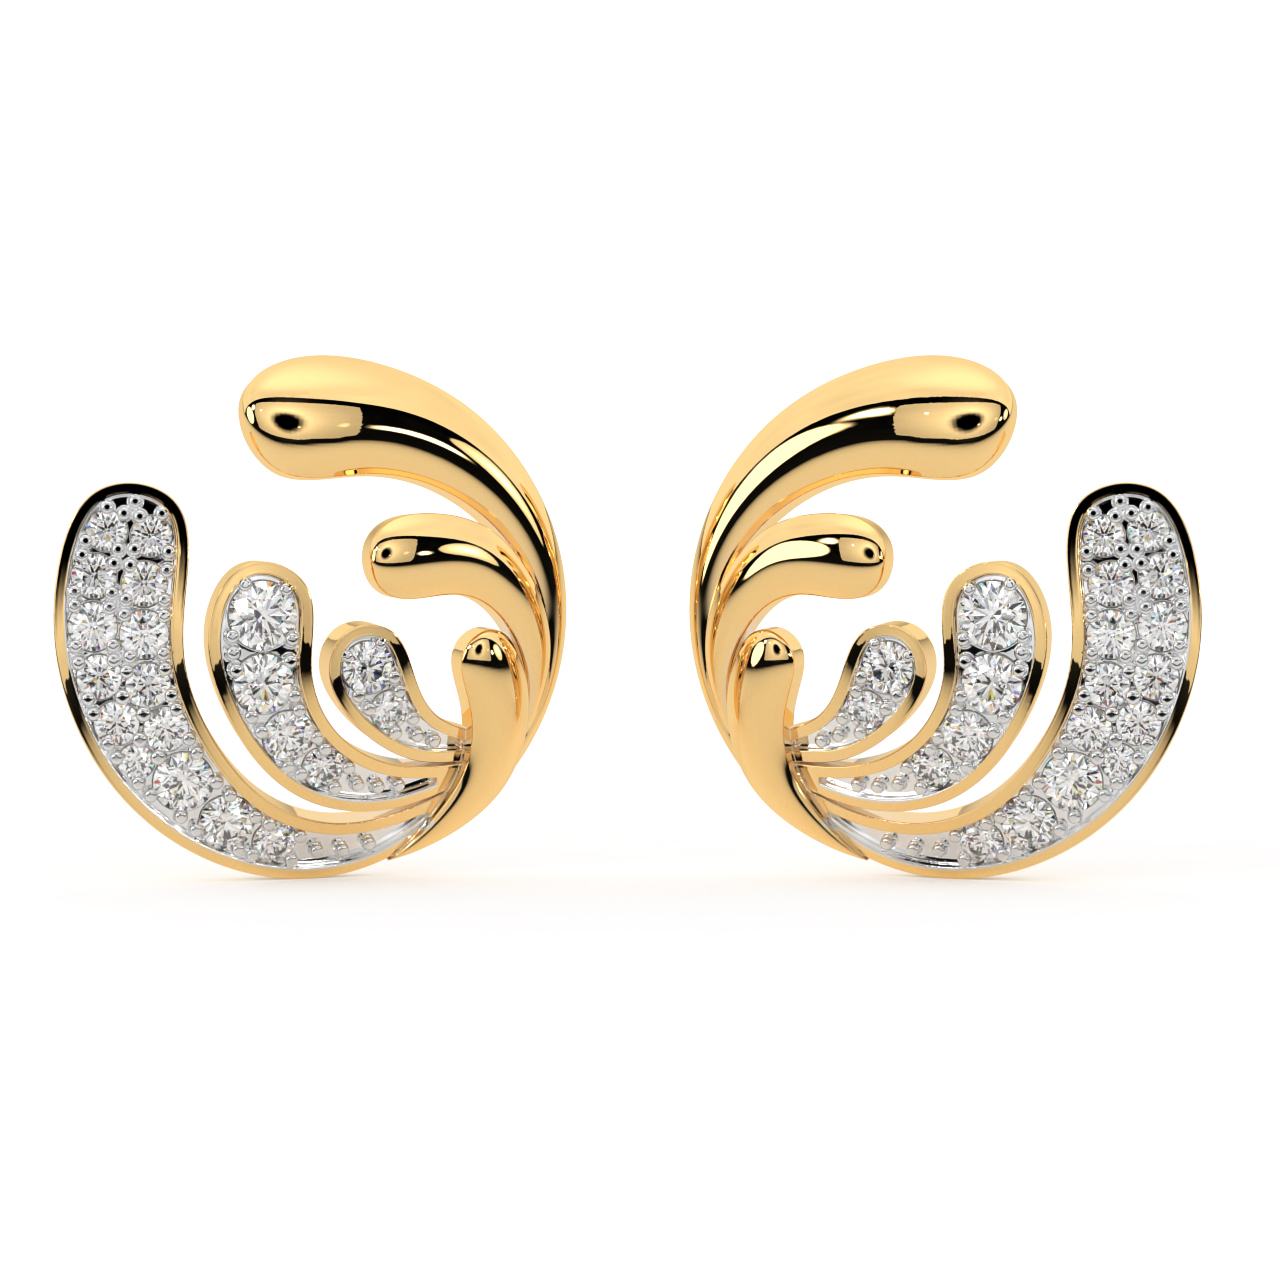 Jean Queen Diamond Earrings